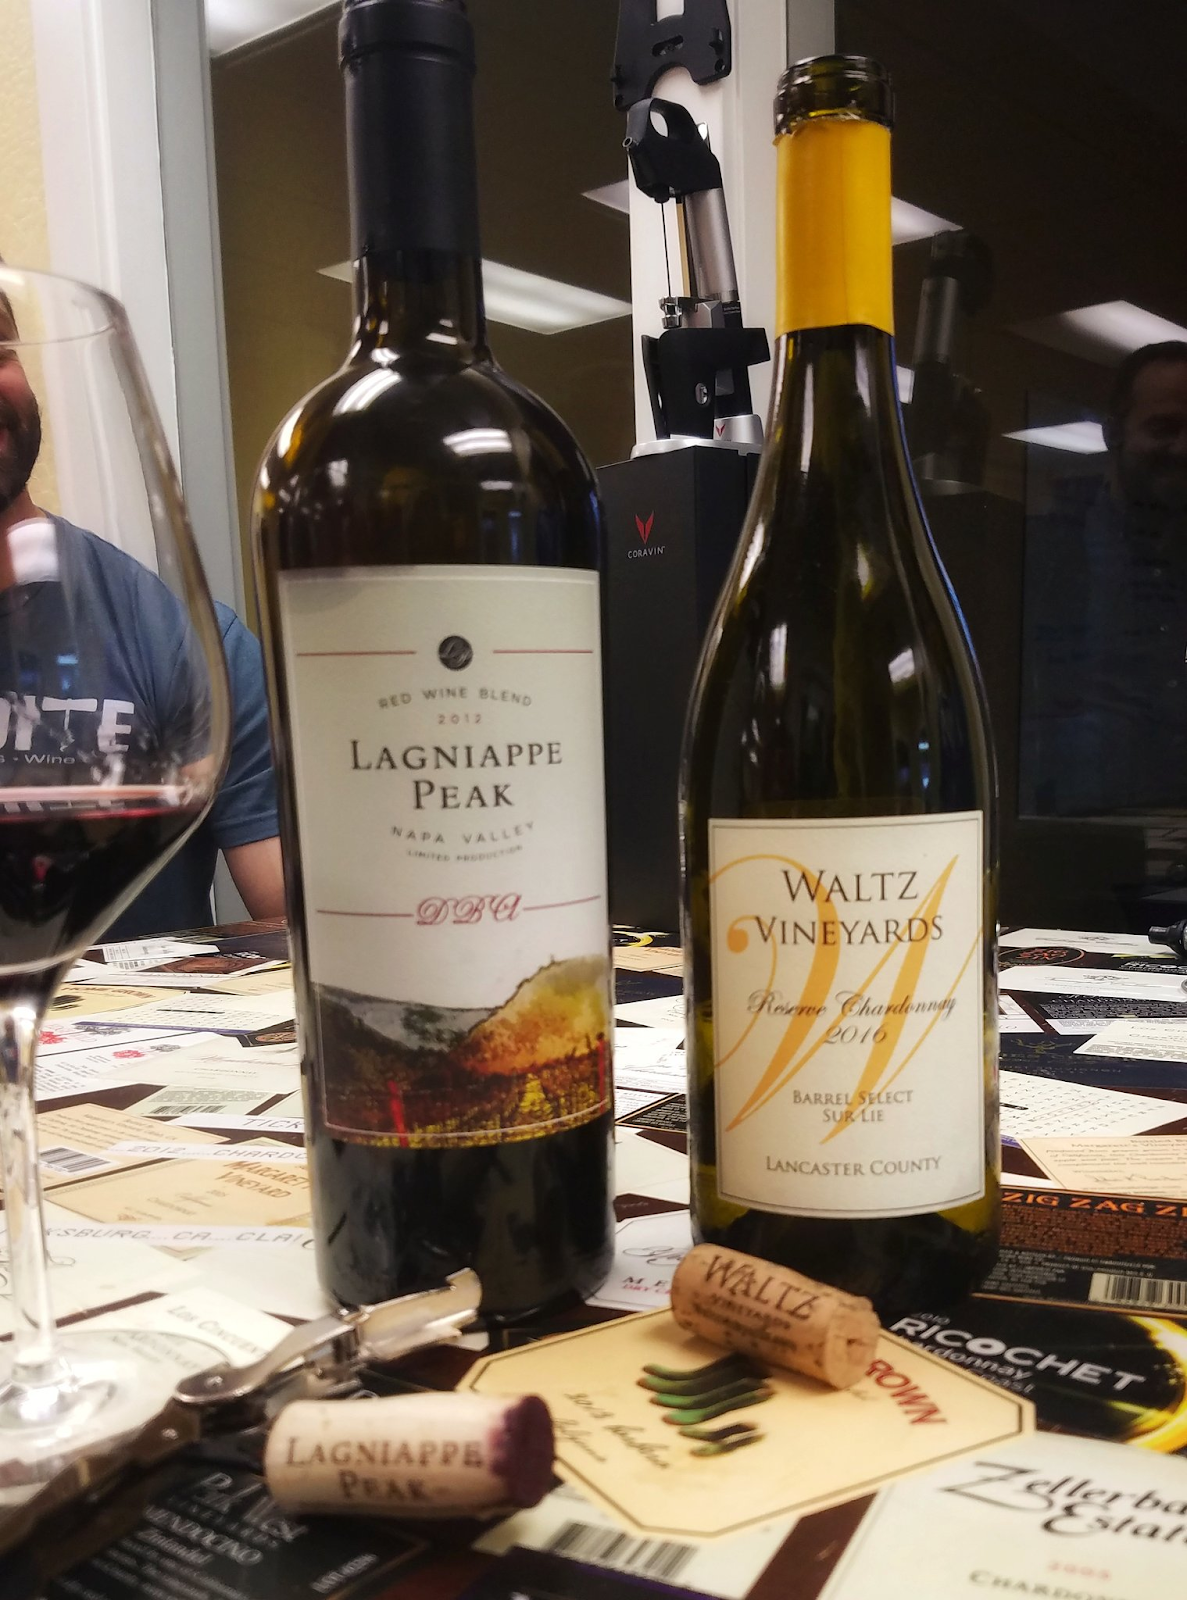 Lagniappe Peak and Waltz Vineyards wine bottles